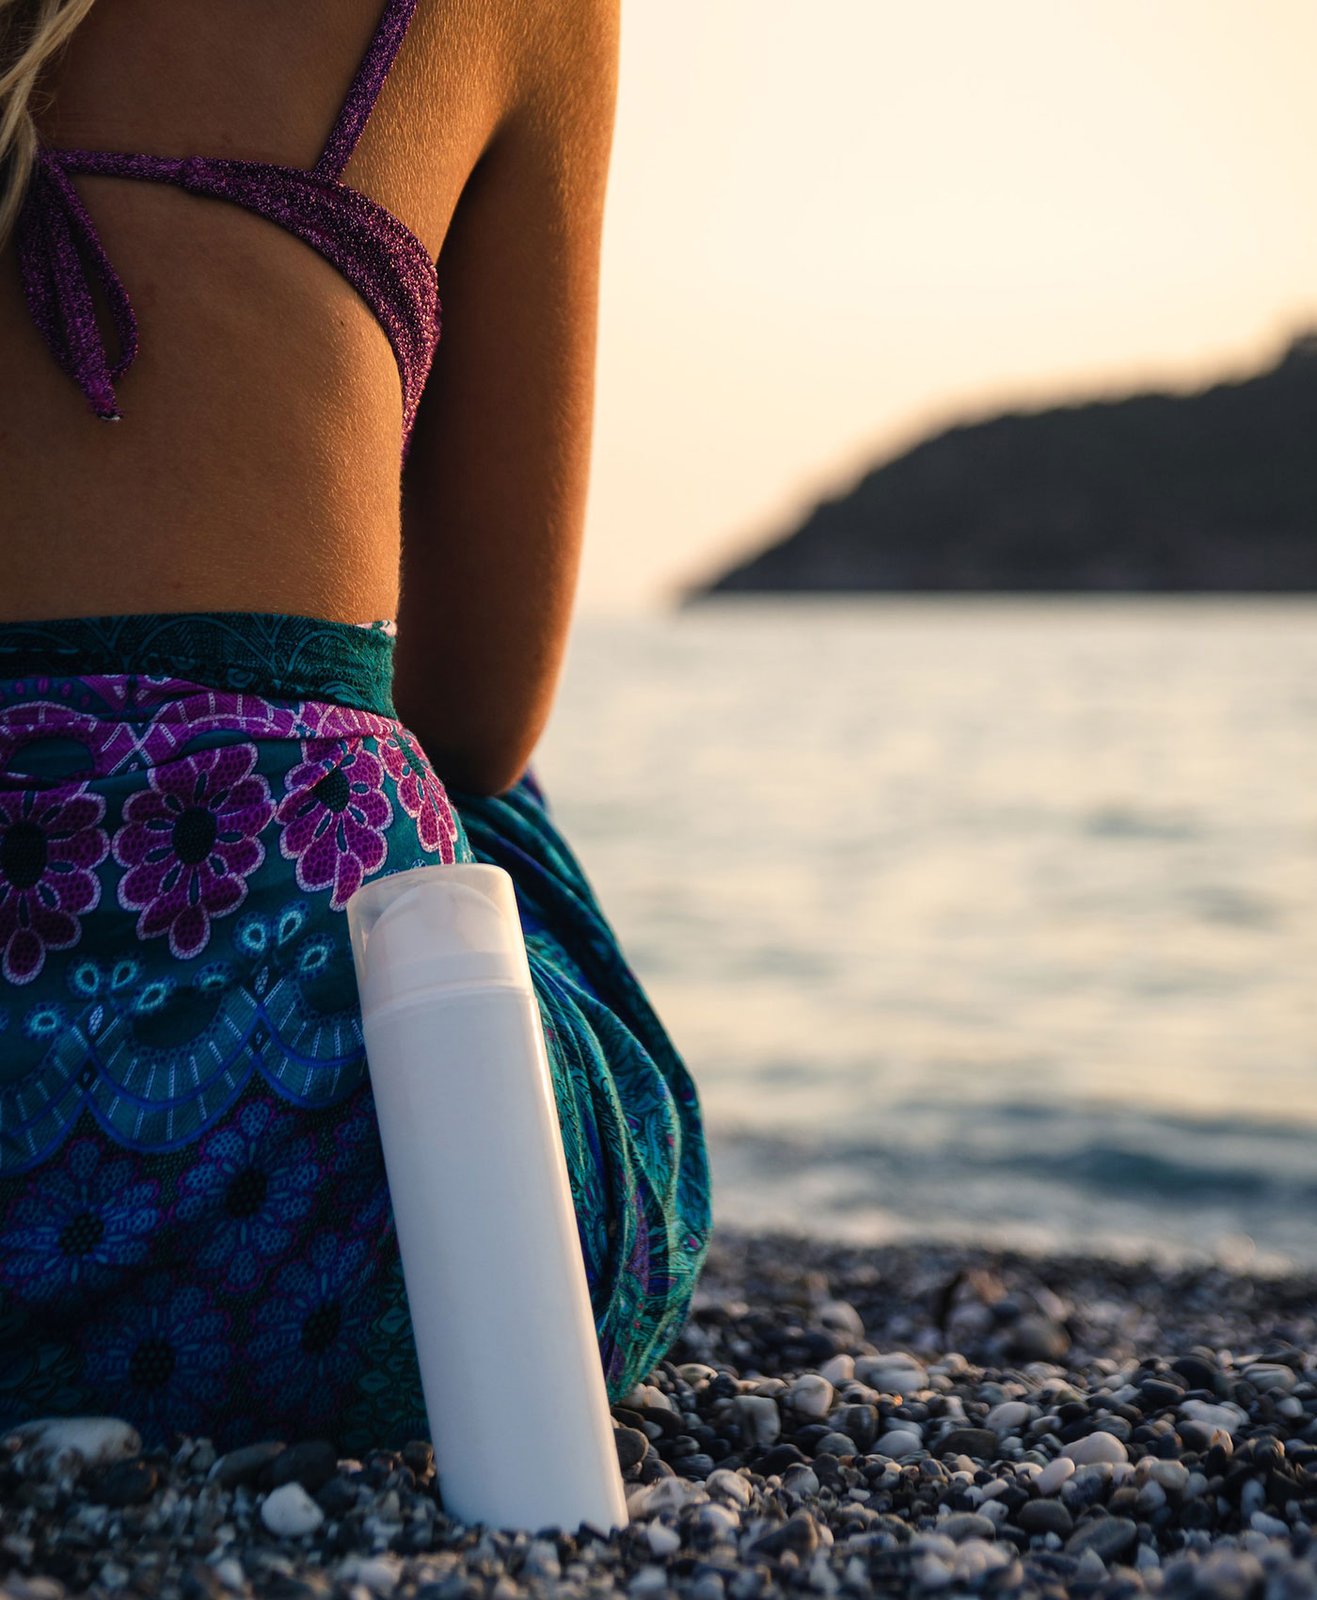 Une femme sur une plage avec un pot de crème solaire